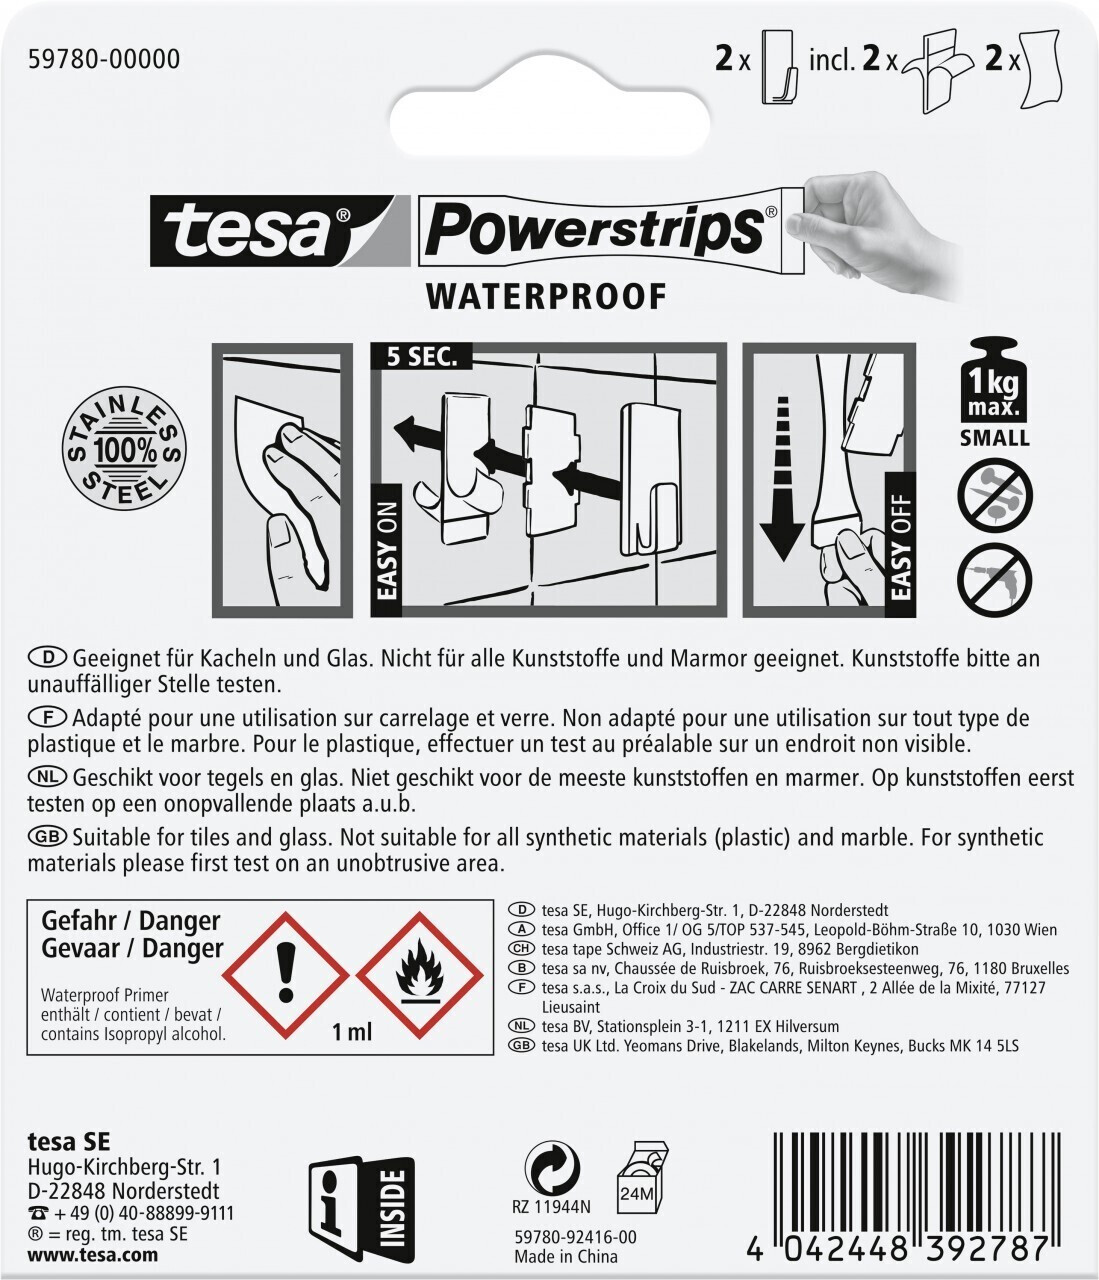 Tesa Klebehaken 59780 Powerstrips Waterproof Eckig, Small, 1kg